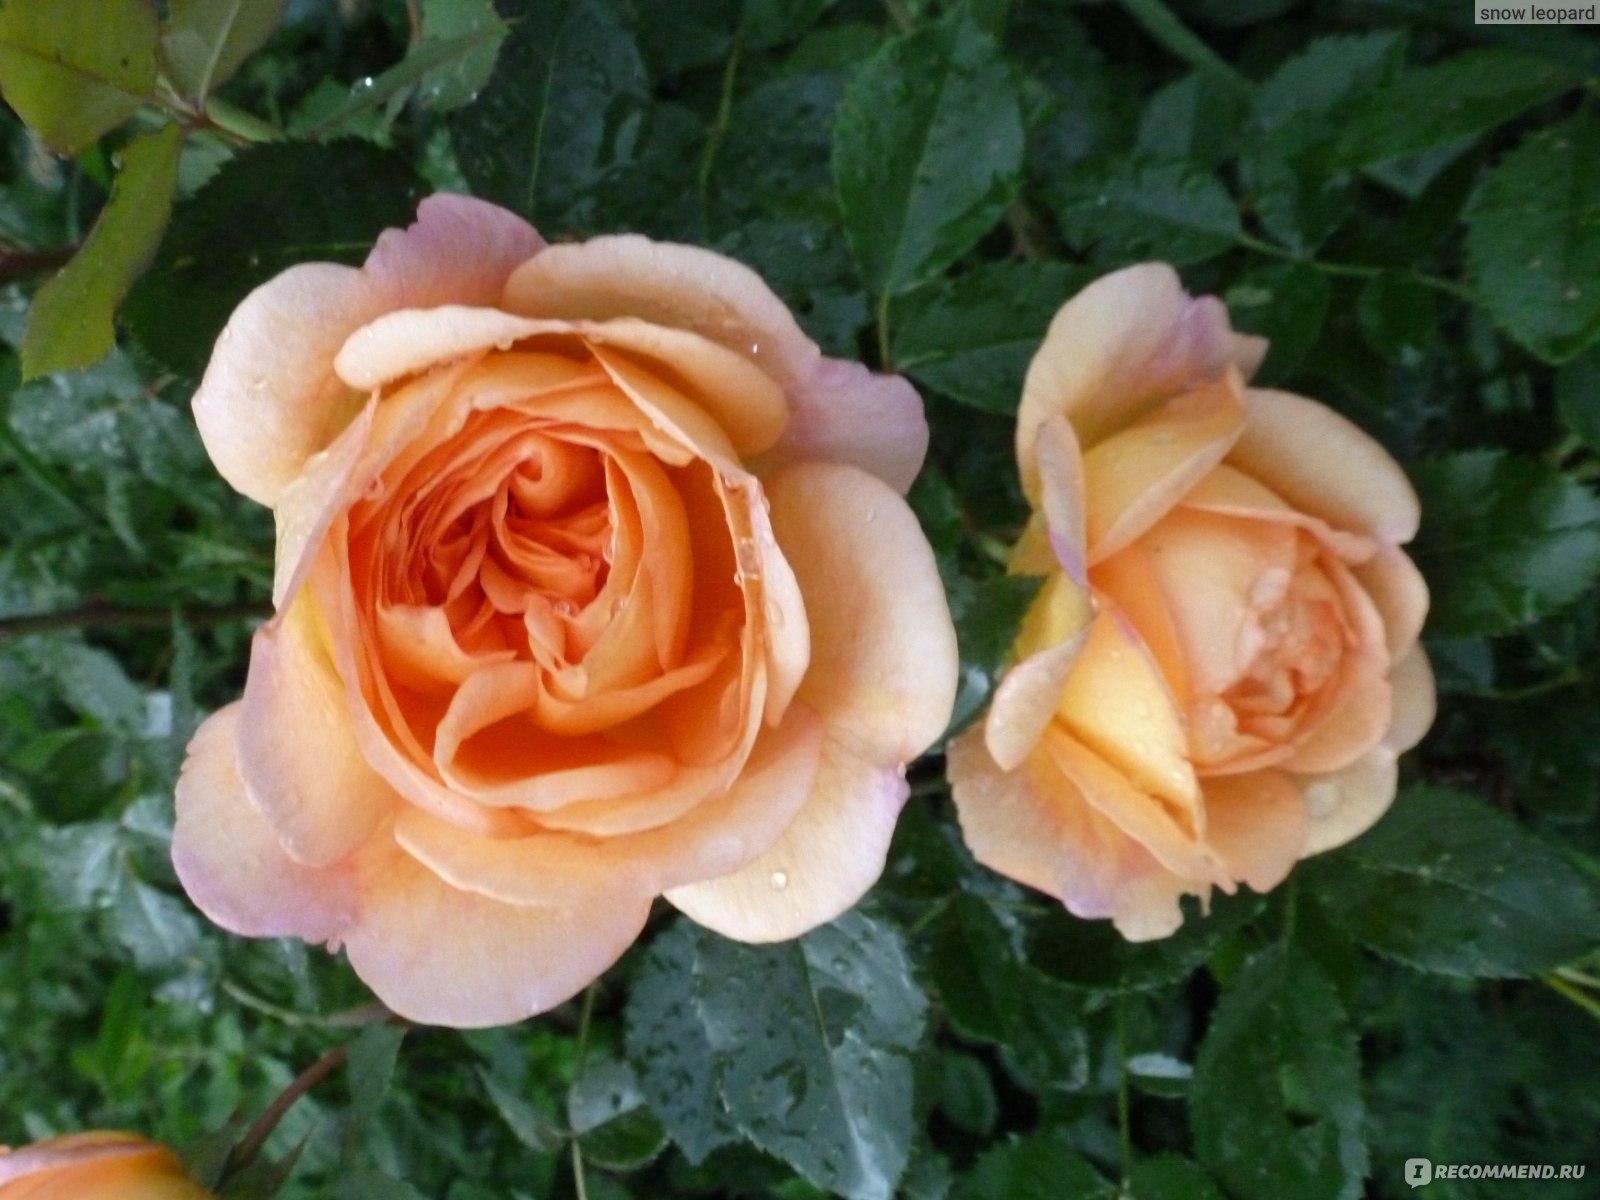 Роза Английская Леди оф Шалот (Lady of Shalott English rose) Девид Остин (David Austin) - «"Едва ль доселе видел свет Подобный благородства цвет." Прелестная волшебница Элейн из Шалота в моем саду. Невесомая